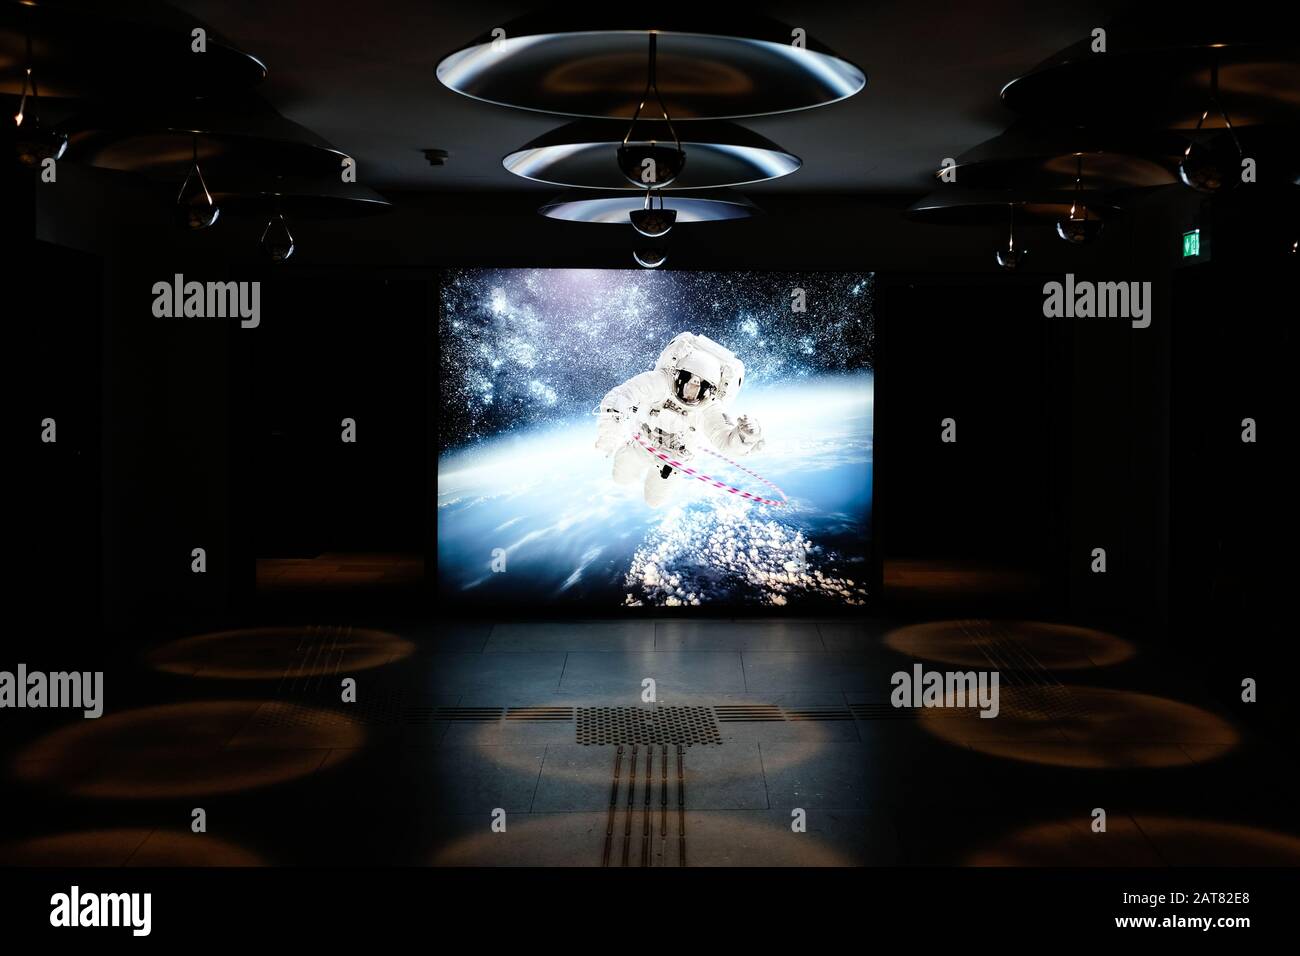 Enorme immagine di un astronauta nella lobby dell'hotel Foto Stock